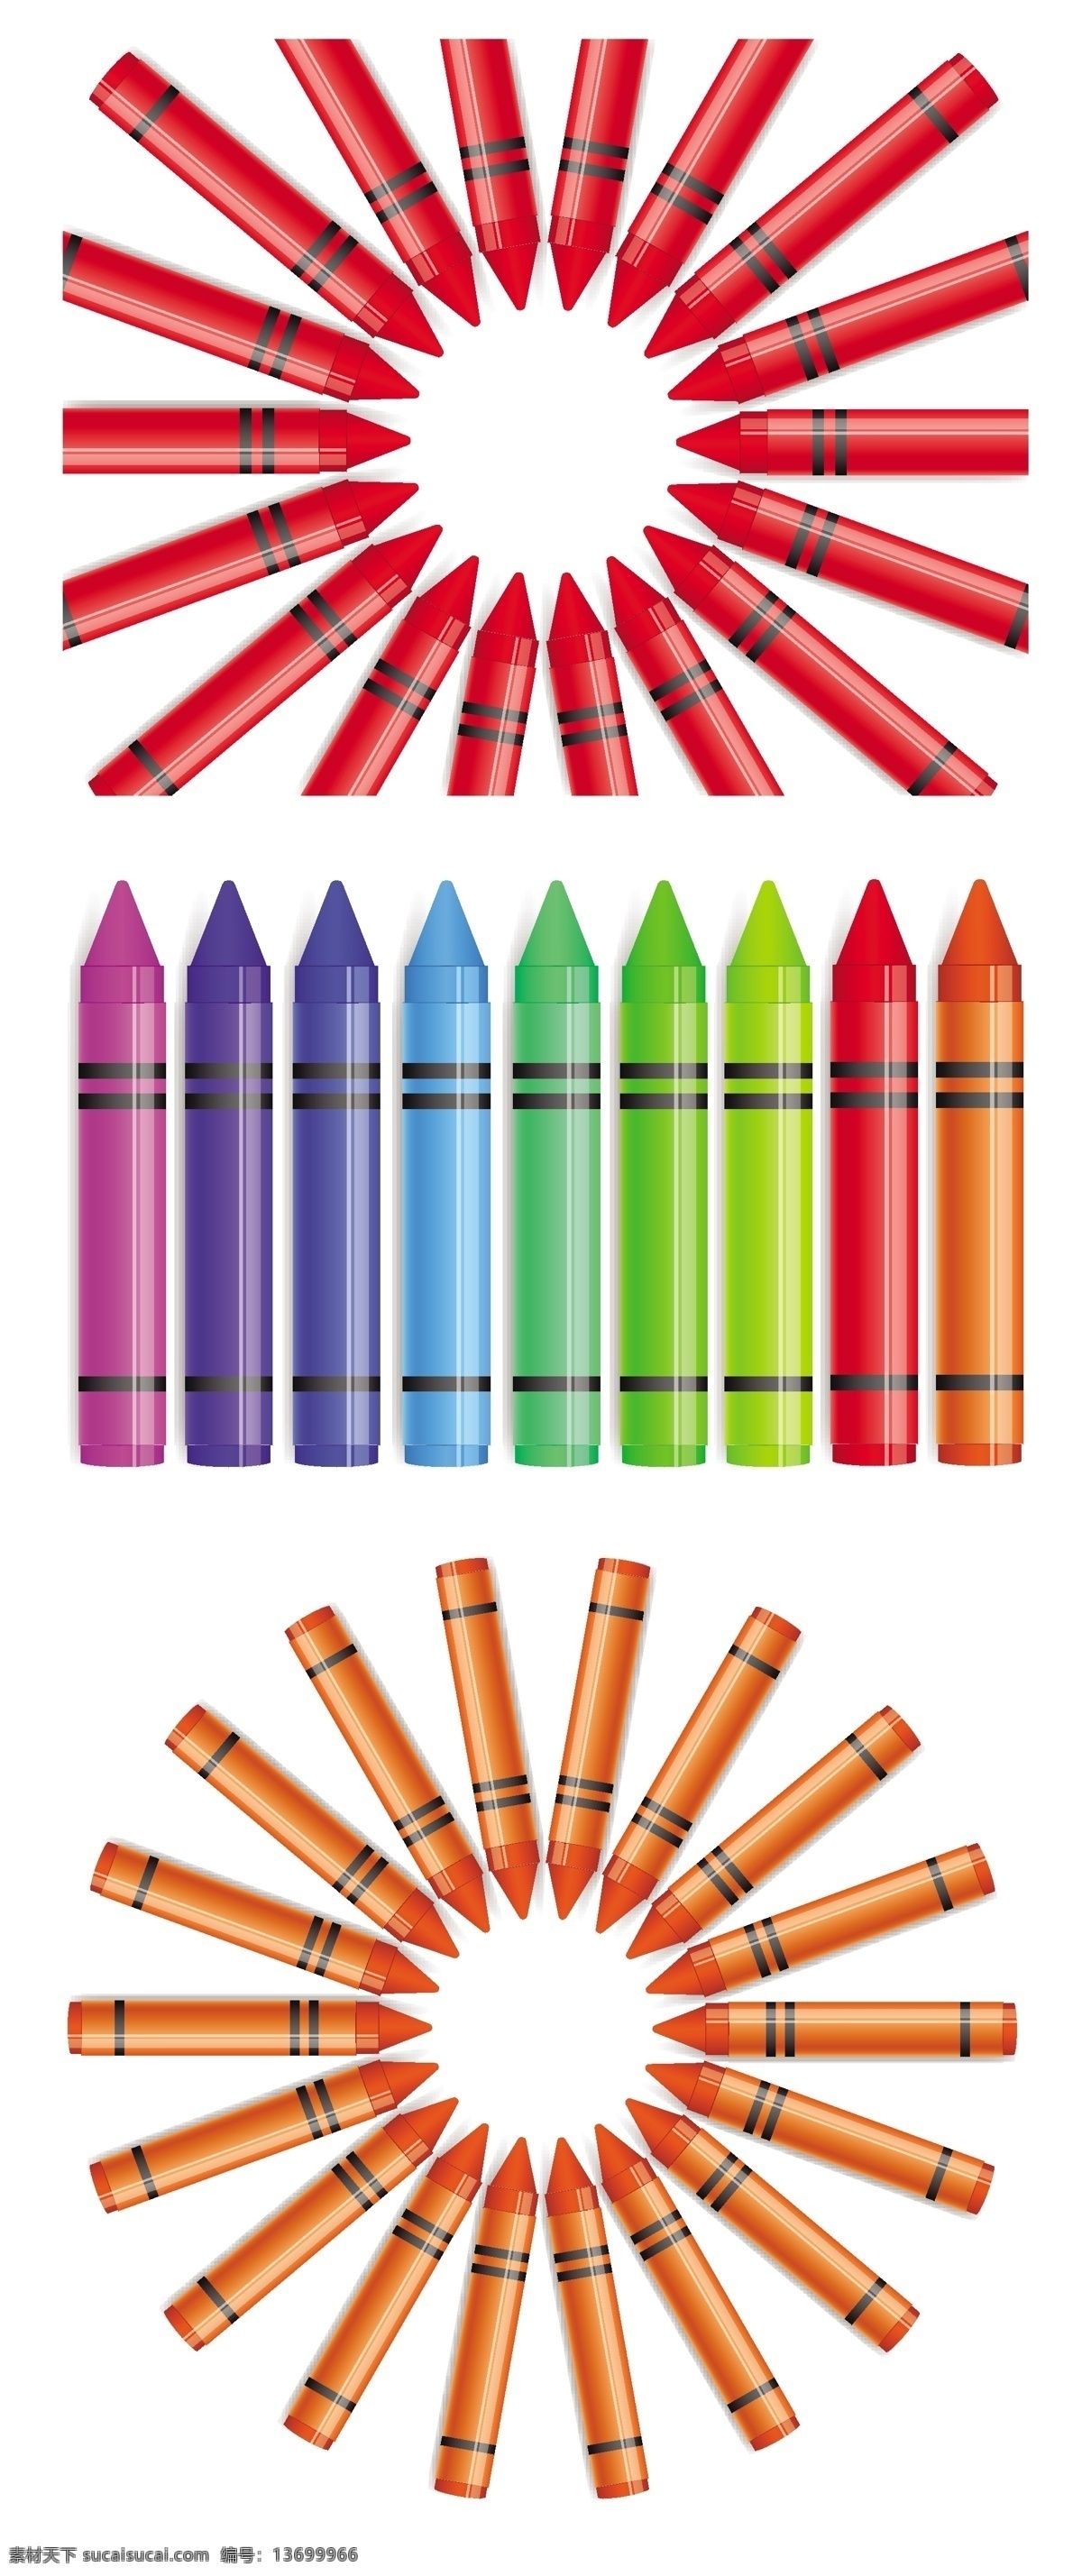 蜡笔 向量 蜡笔向量 矢量图 其他矢量图